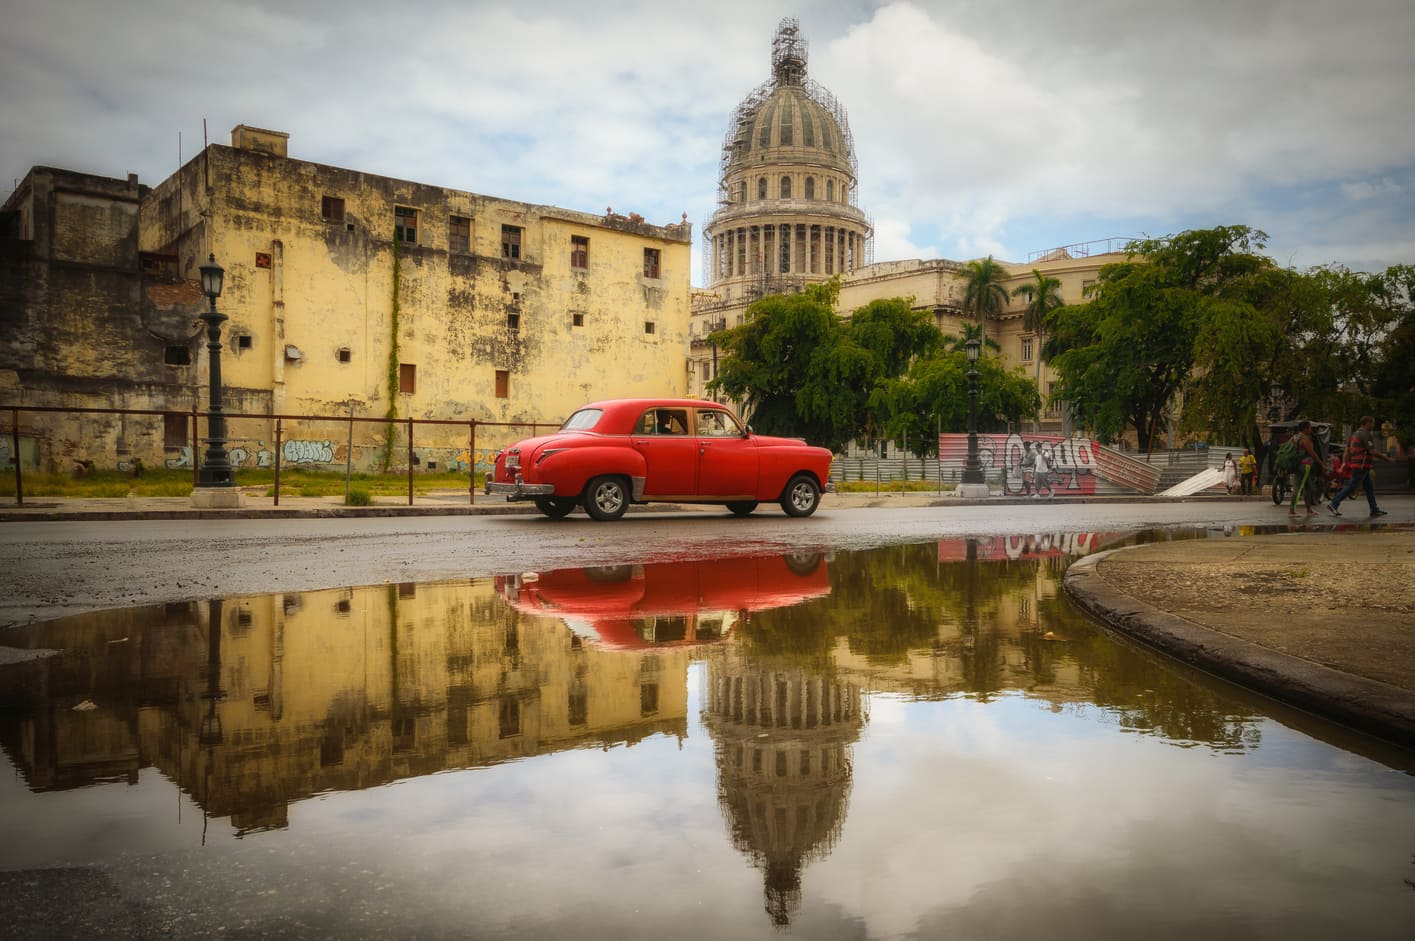 capitolio de la habana y coche callidac rojo reflejado que requisitos tiene un seguro de viaje a cuba